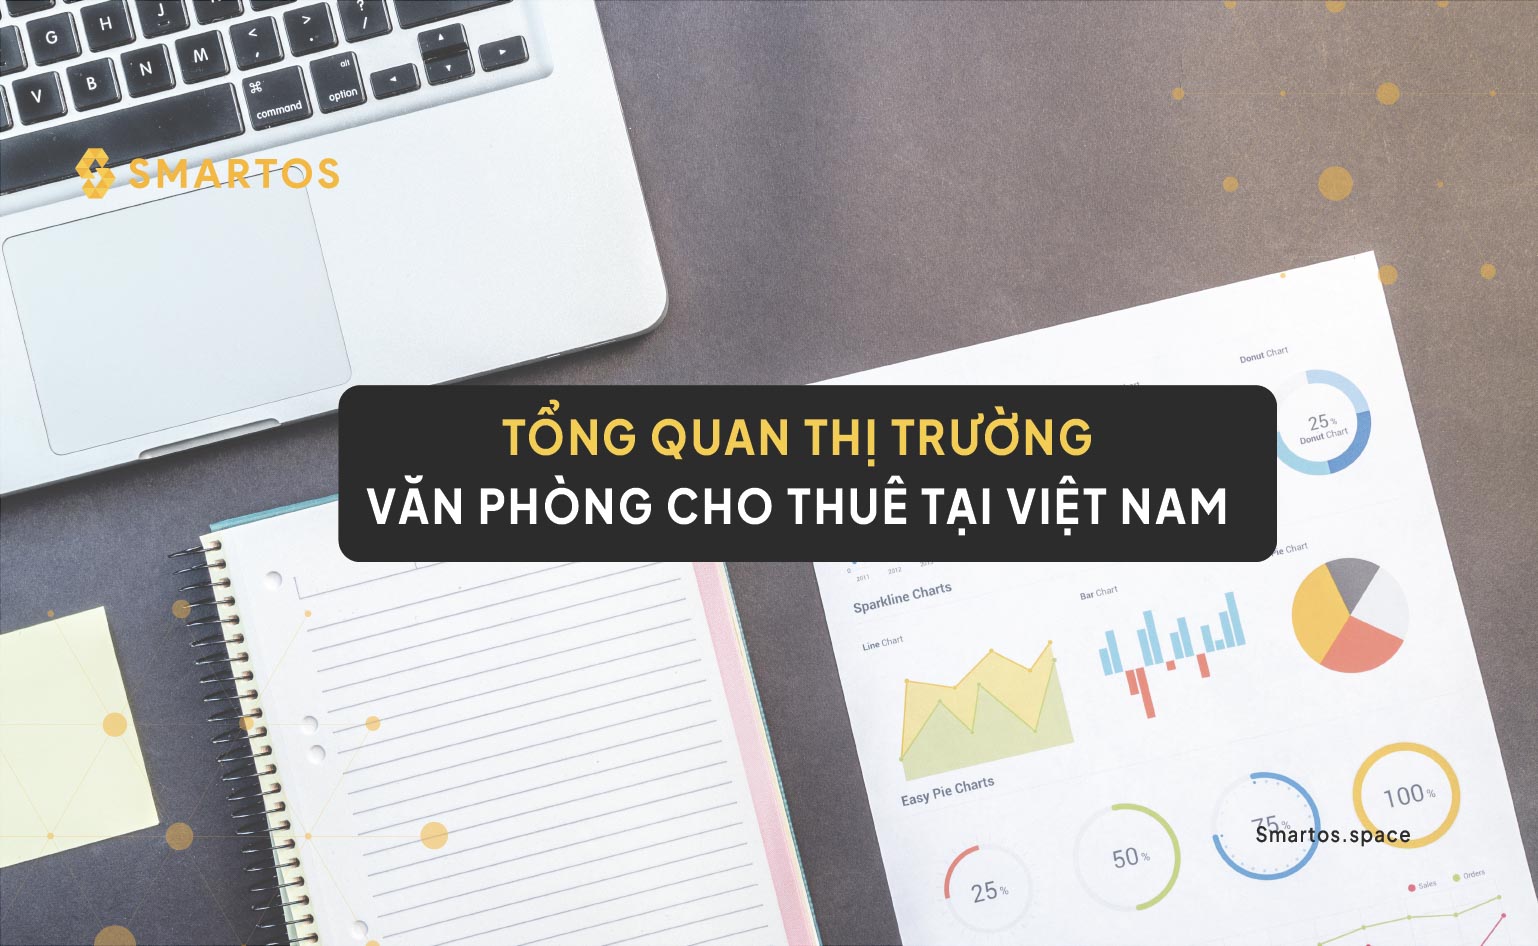 Tổng quan thị trường văn phòng cho thuê tại Việt Nam